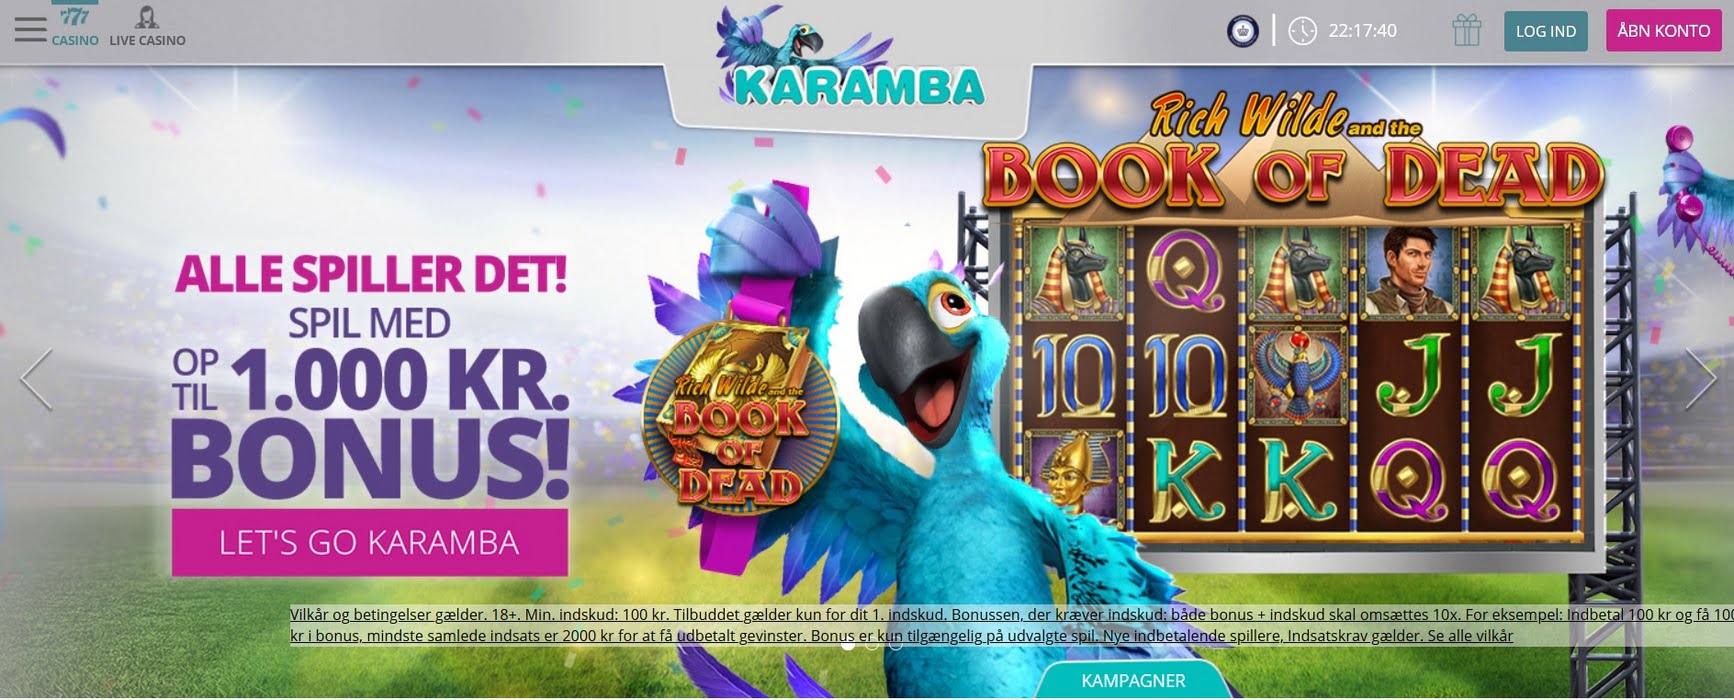 Karamba casino mobile